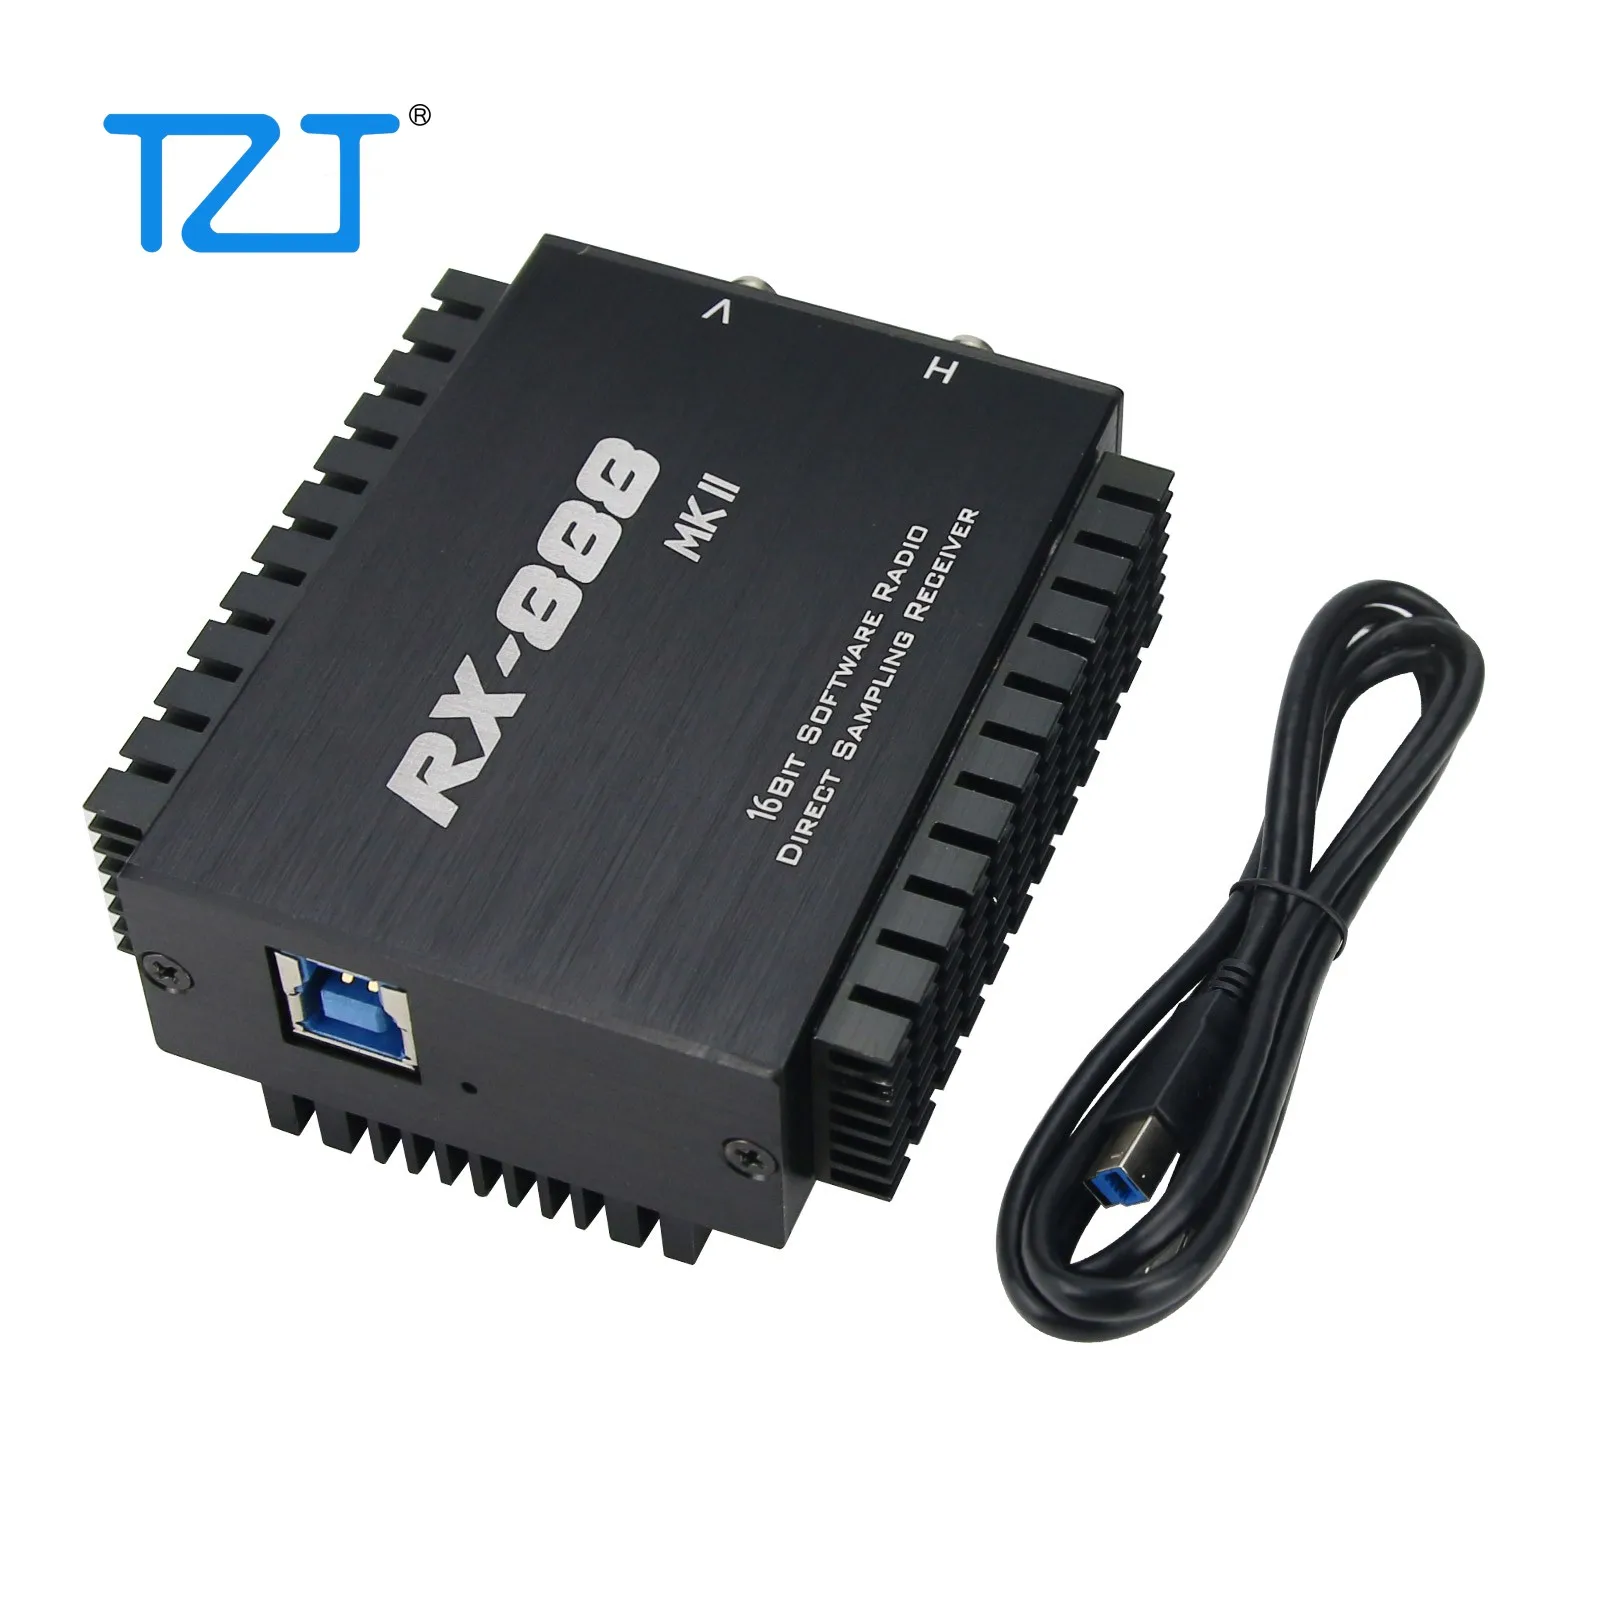 2021 RX-888 MKII SDR Radyo Alıcısı SDR Amatör Radyo Alıcısı LTC2208 16Bit ADC Doğrudan Örnekleme R828D RX888 Artı